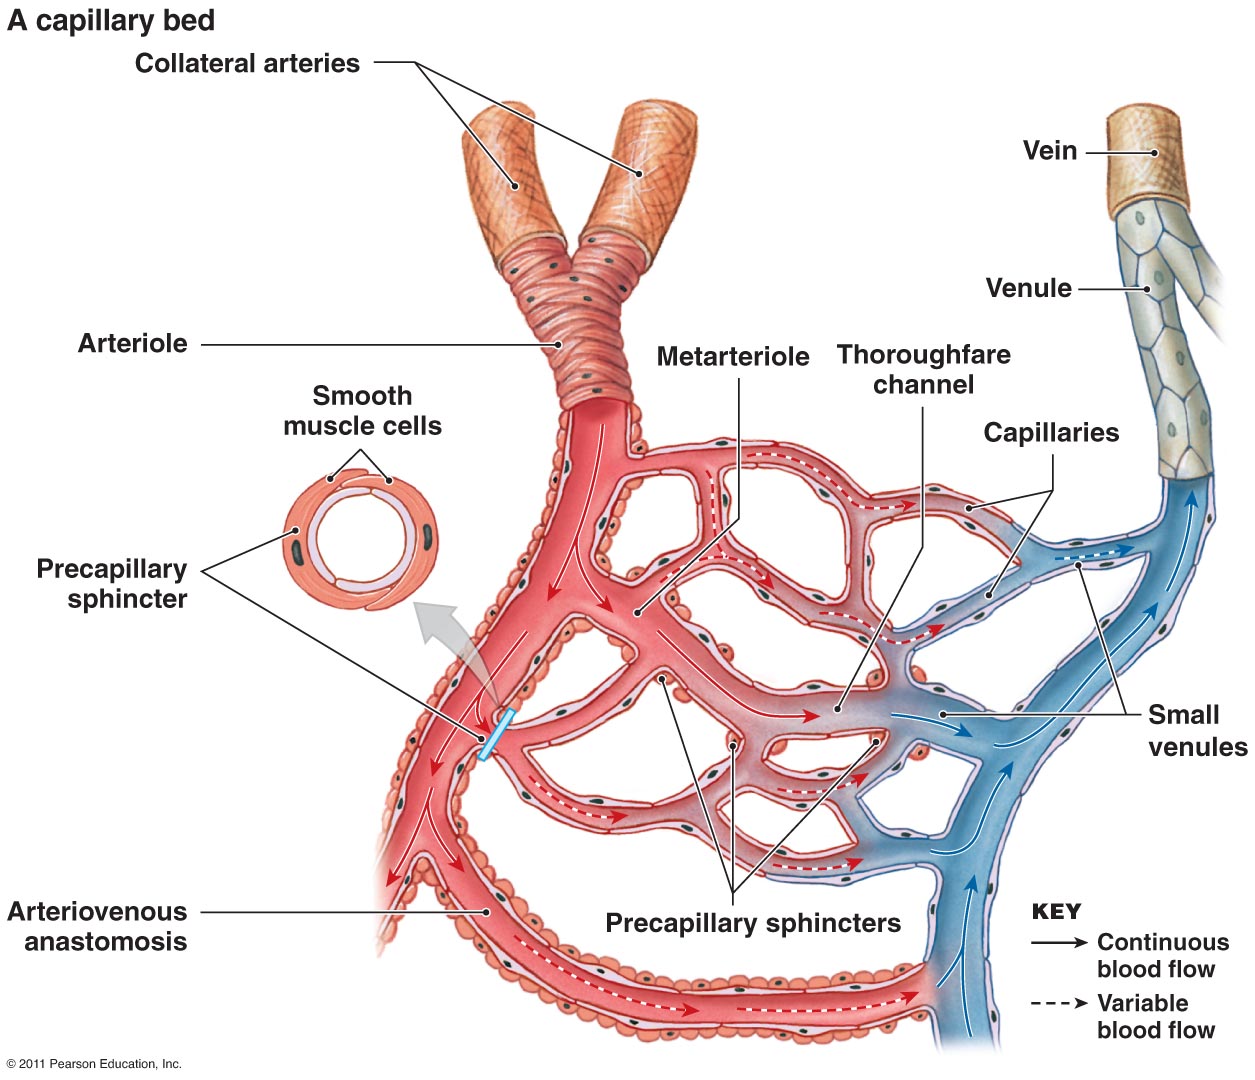 Вены и артерии схема. Сосуды микроциркуляторного русла схема. Схема строения микроциркуляторного русла. Артерии и вены венулы и артериолы. Артерии артериолы капилляры венулы вены.